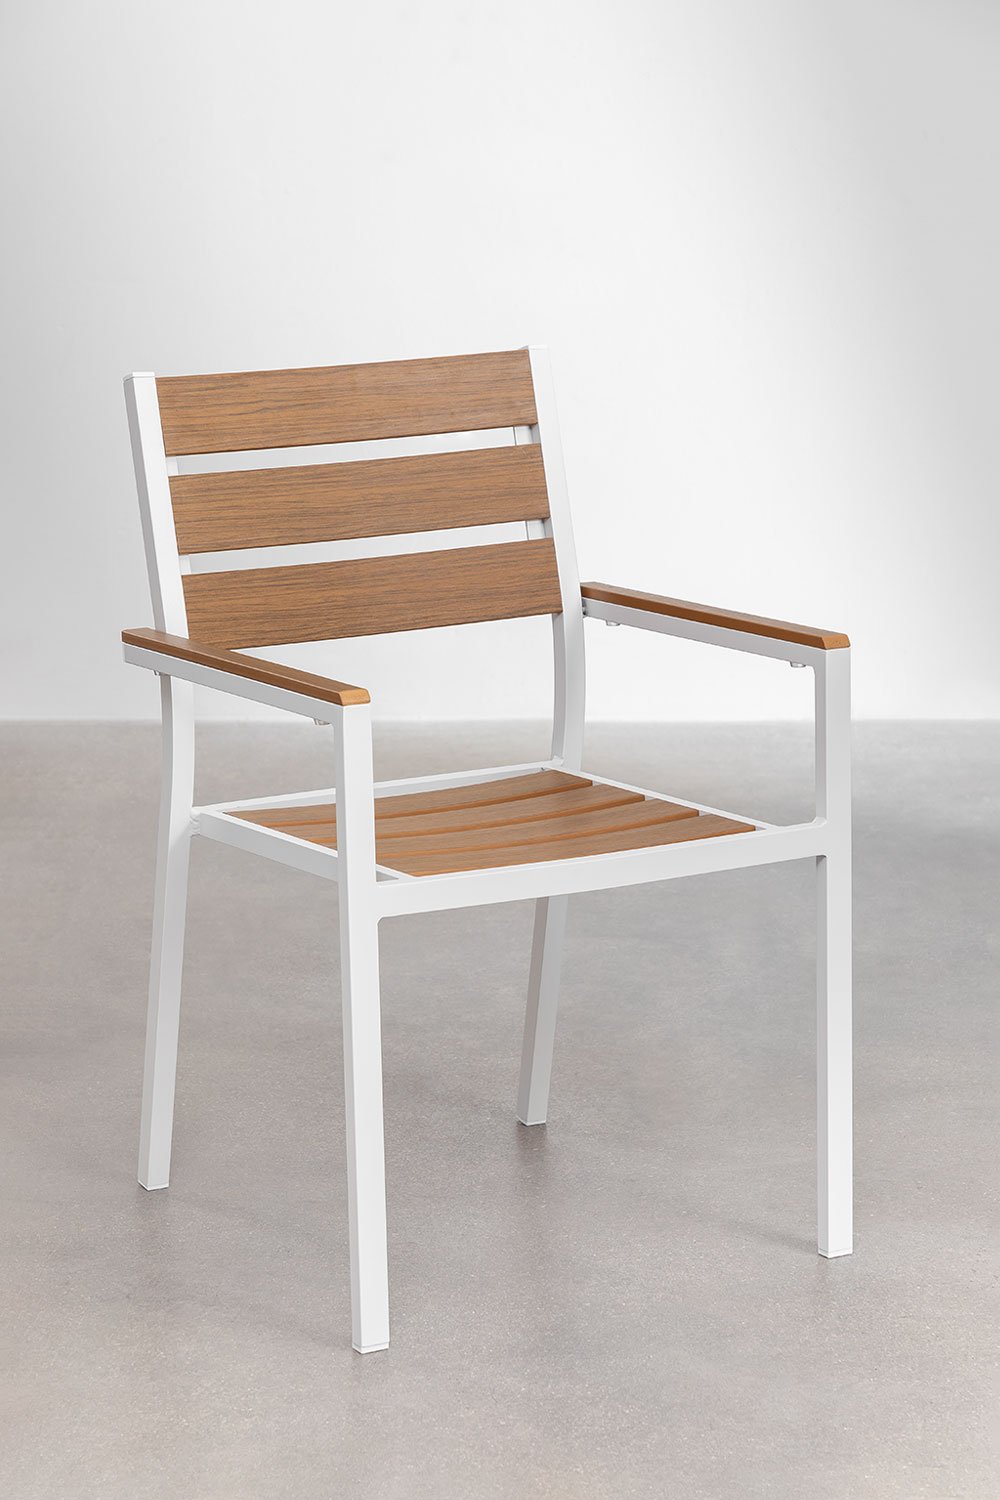 Confezione da 4 sedie da giardino impilabili con braccioli Saura, immagine della galleria 1